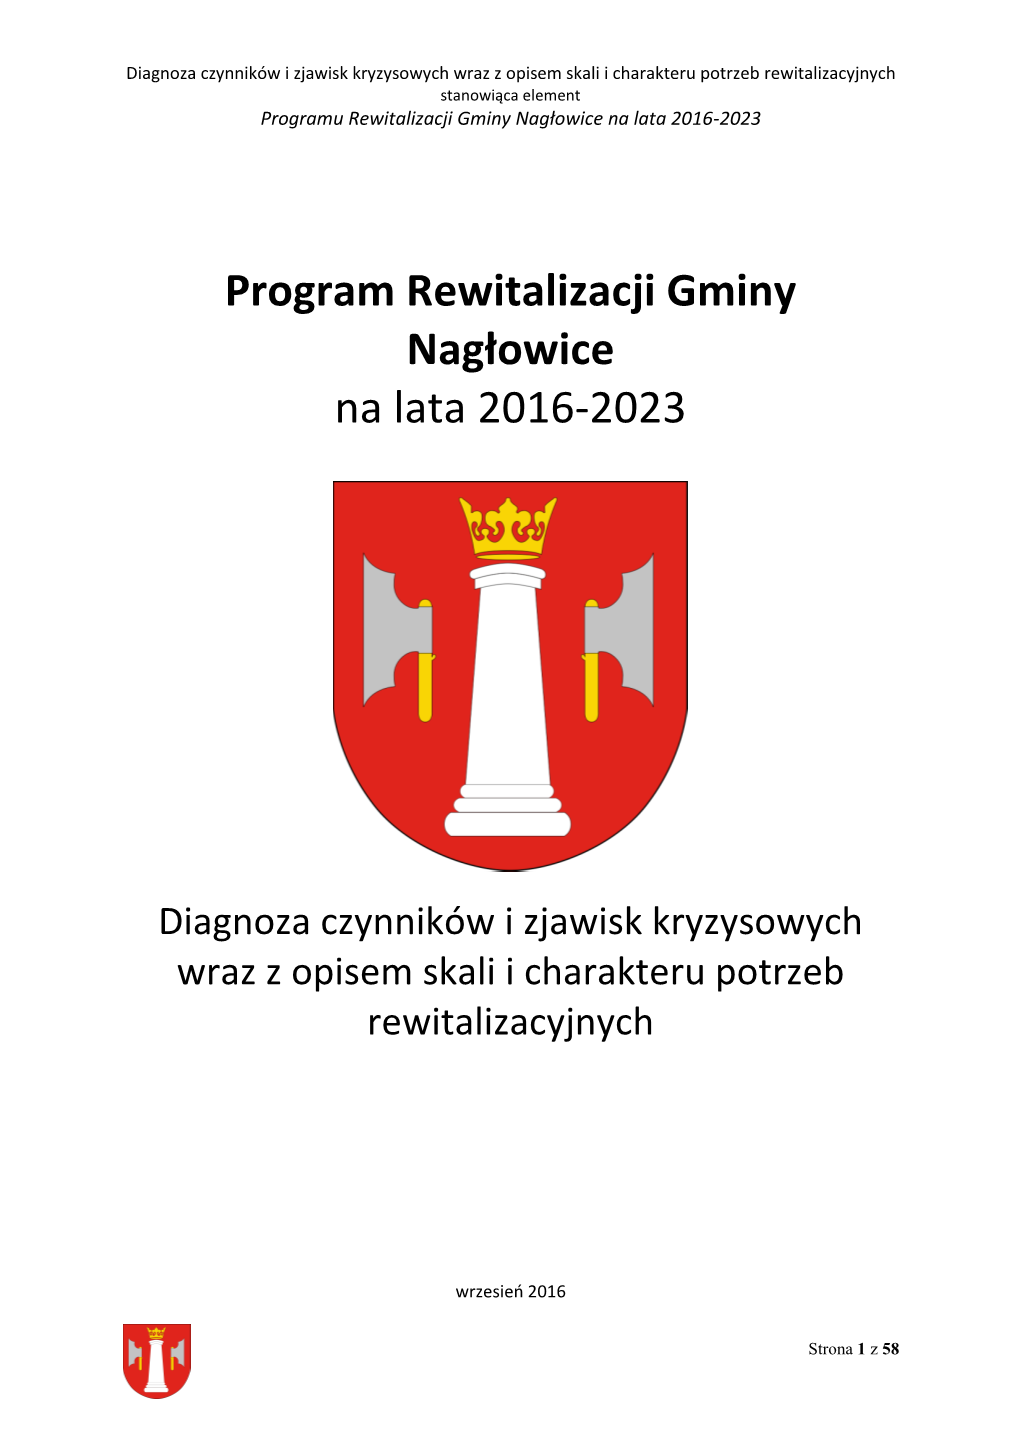 Program Rewitalizacji Gminy Nagłowice Na Lata 2016-2023